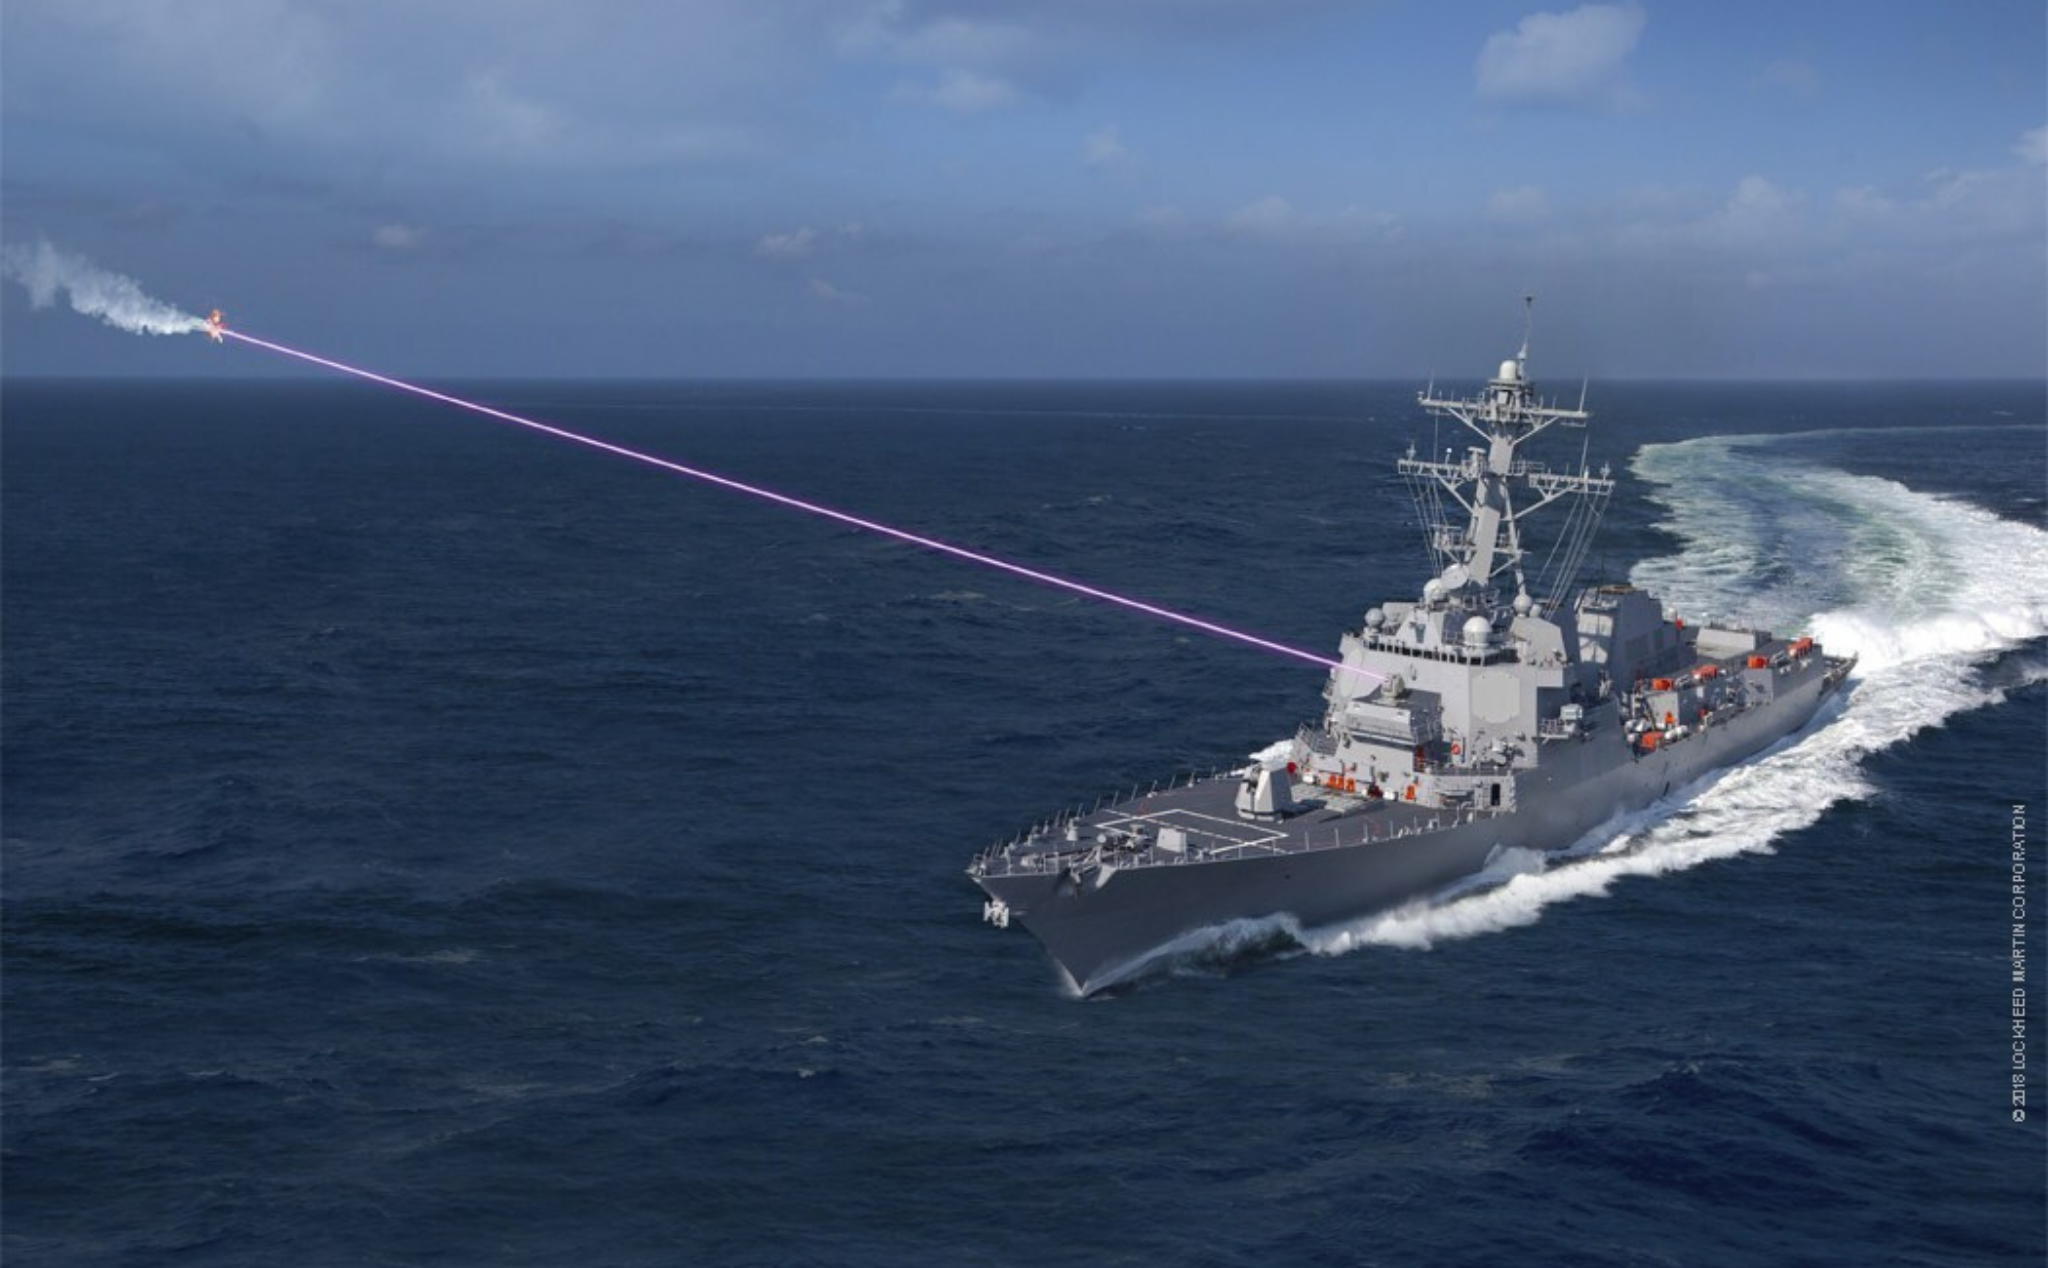 Hải quân Mỹ lần đầu tiên sử dụng tia laser chạy điện hoàn toàn bắn hạ máy bay không người lái